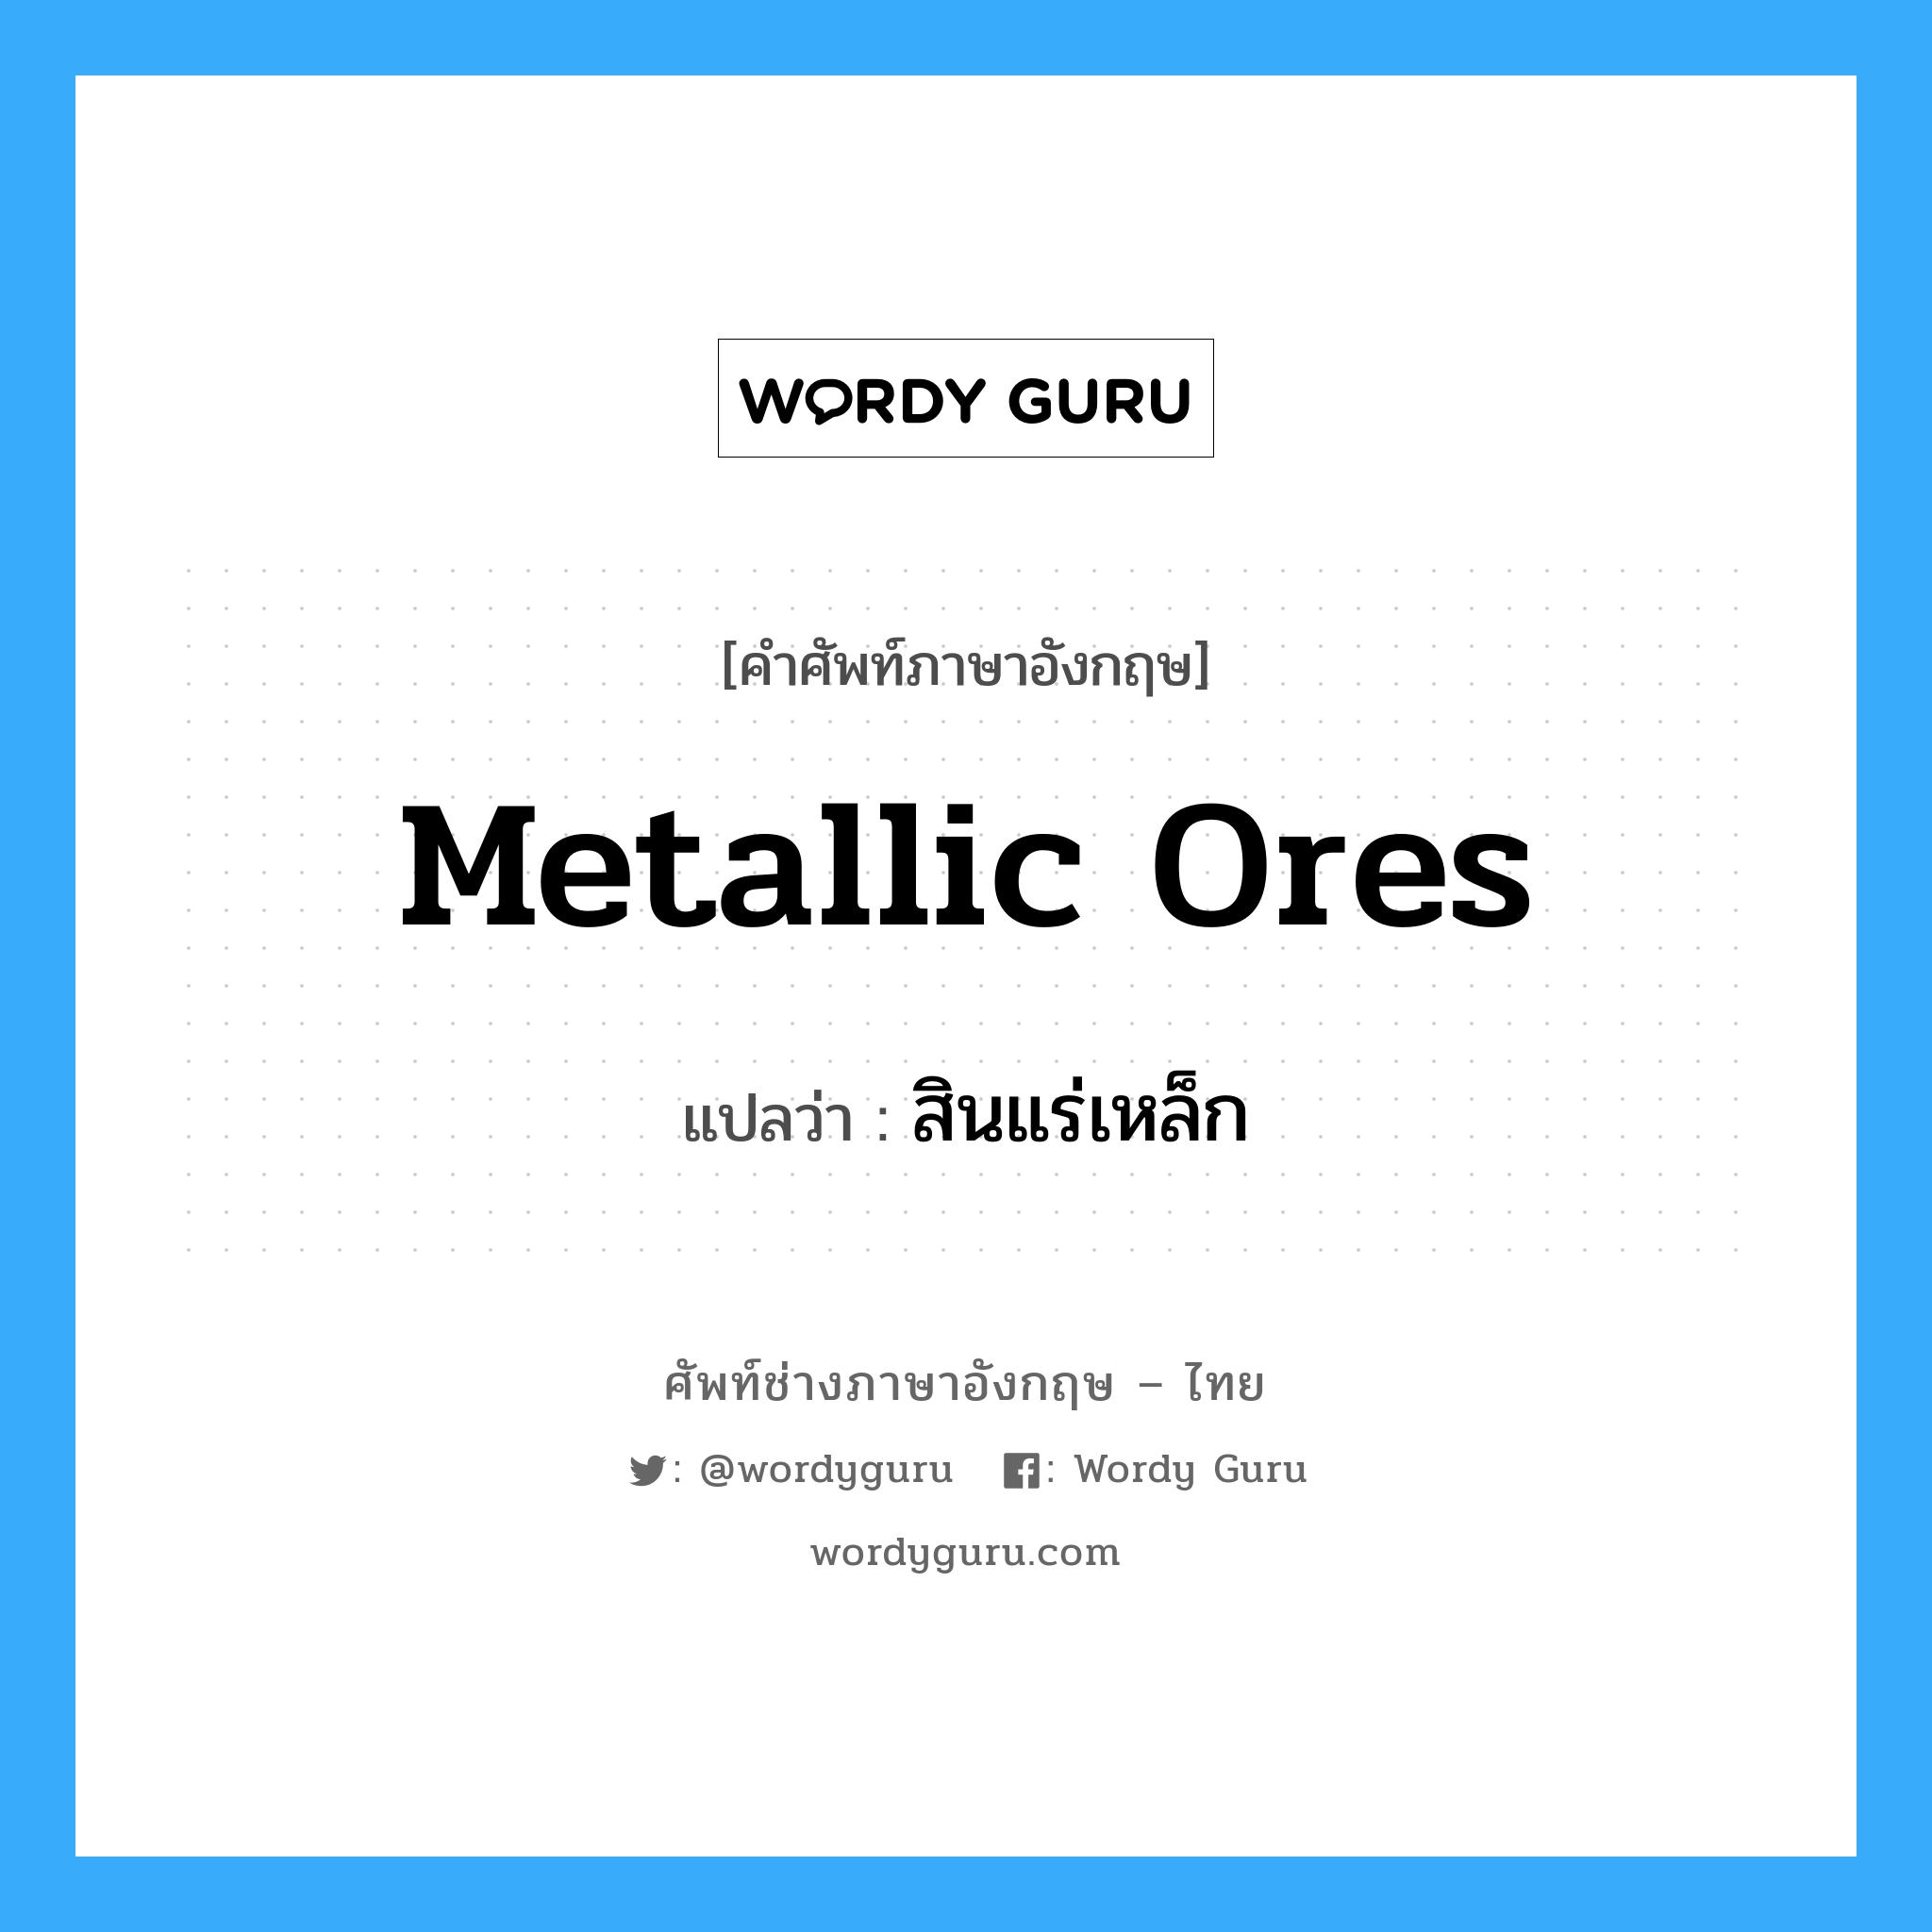 metallic ores แปลว่า?, คำศัพท์ช่างภาษาอังกฤษ - ไทย metallic ores คำศัพท์ภาษาอังกฤษ metallic ores แปลว่า สินแร่เหล็ก